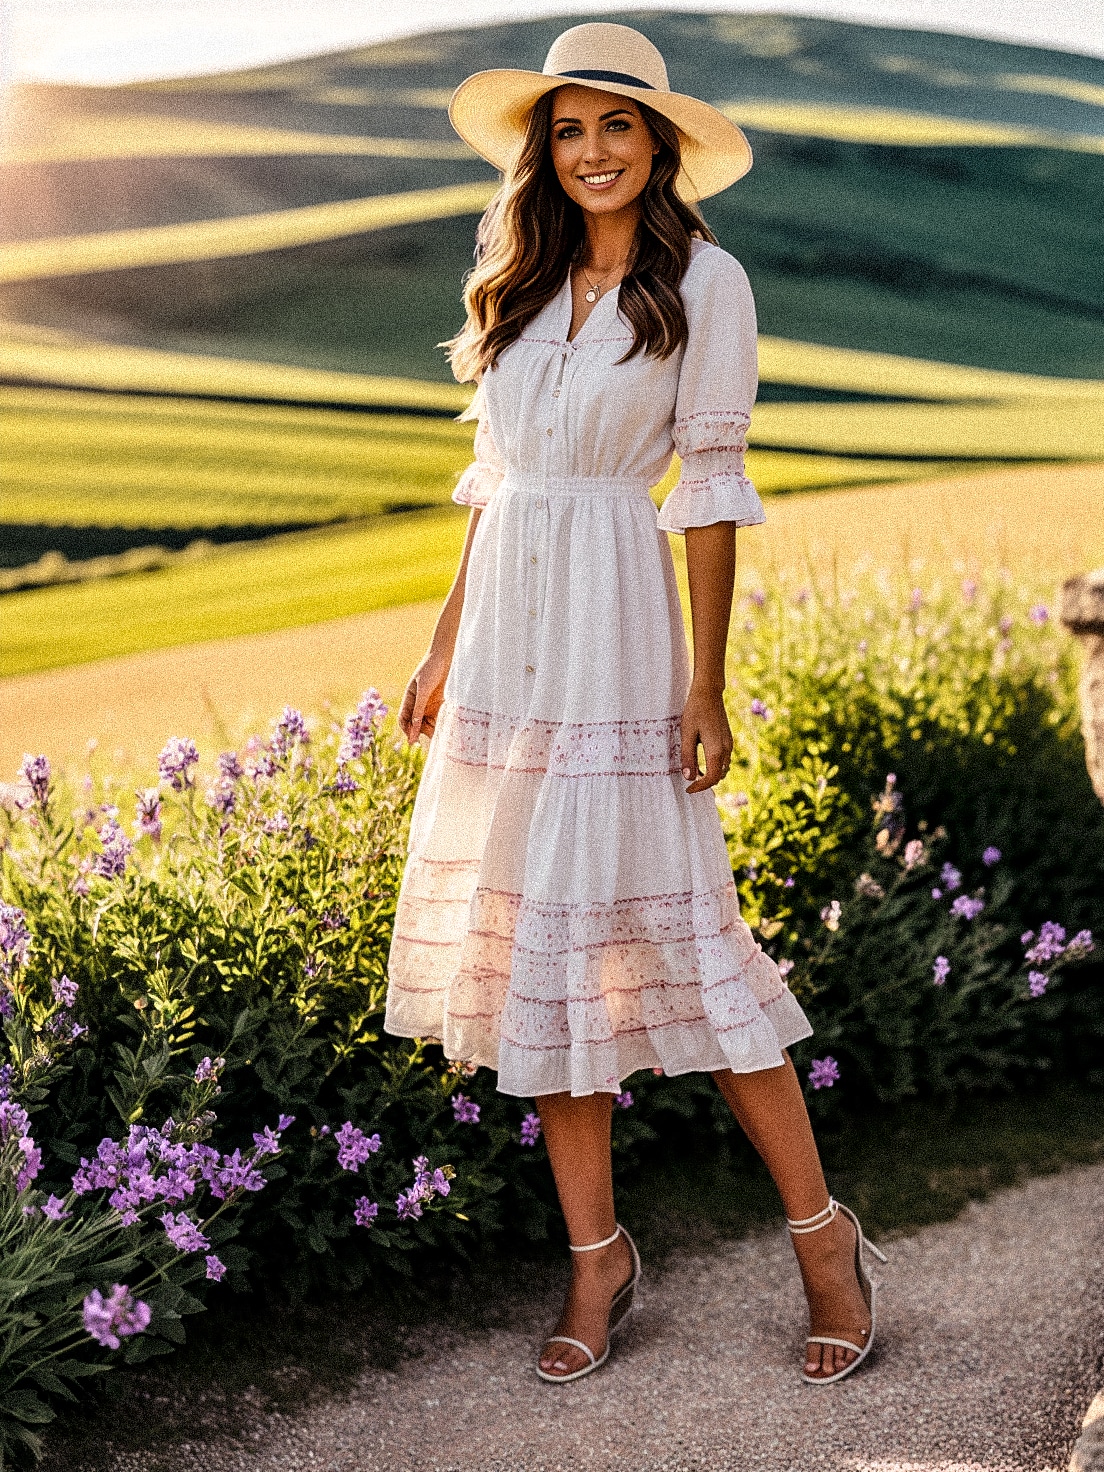 Een vrouw, gekleed in een witte jurk en hoed, perfect voor een bruiloft, in een prachtig veld.